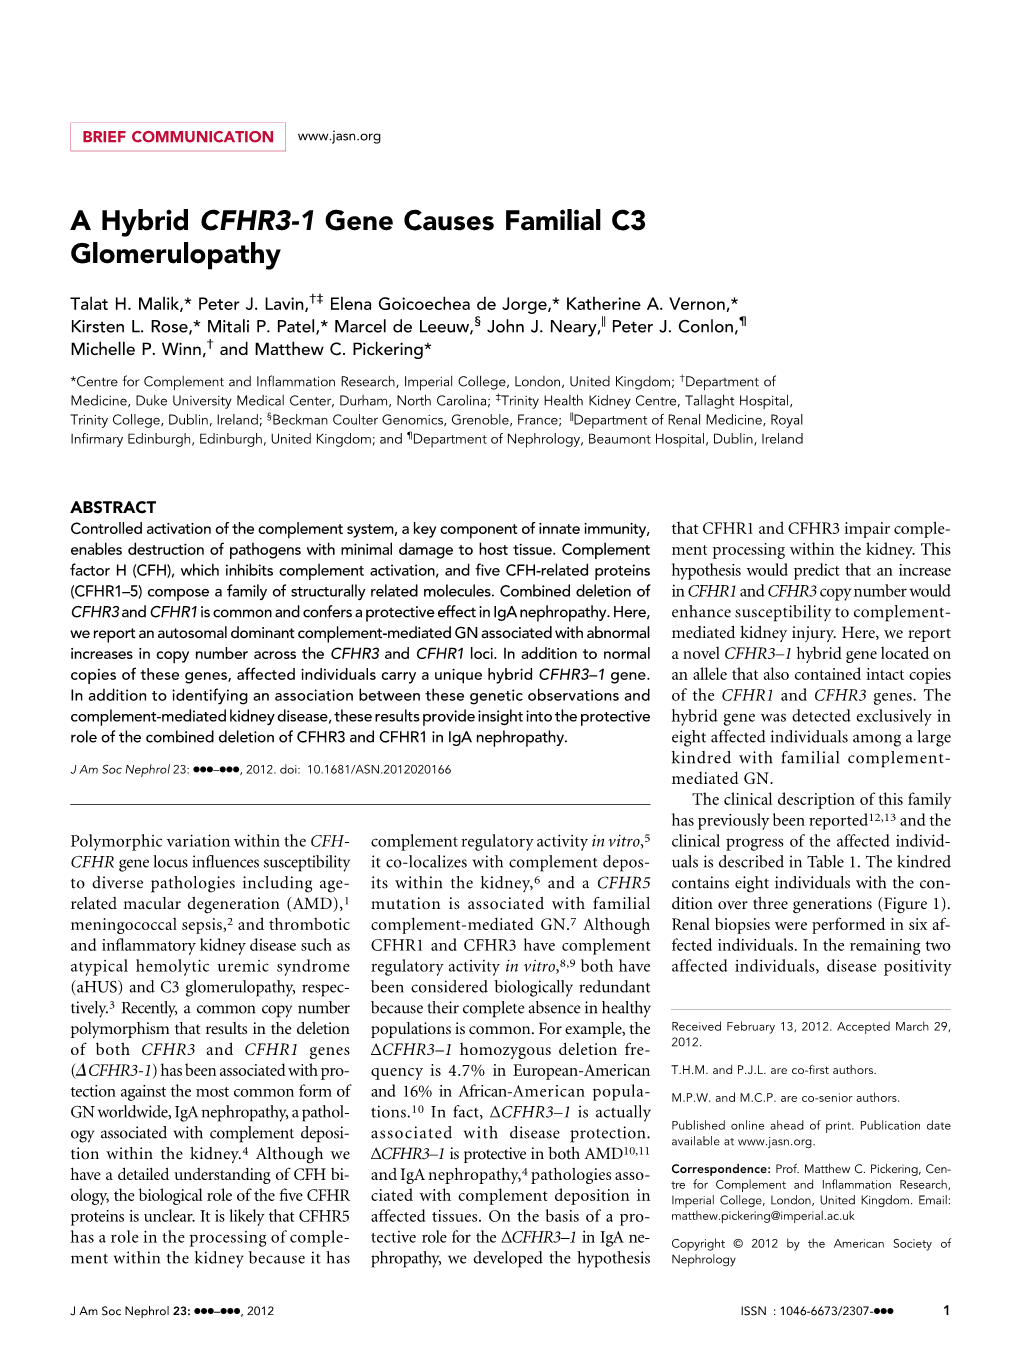 A Hybrid CFHR3-1 Gene Causes Familial C3 Glomerulopathy